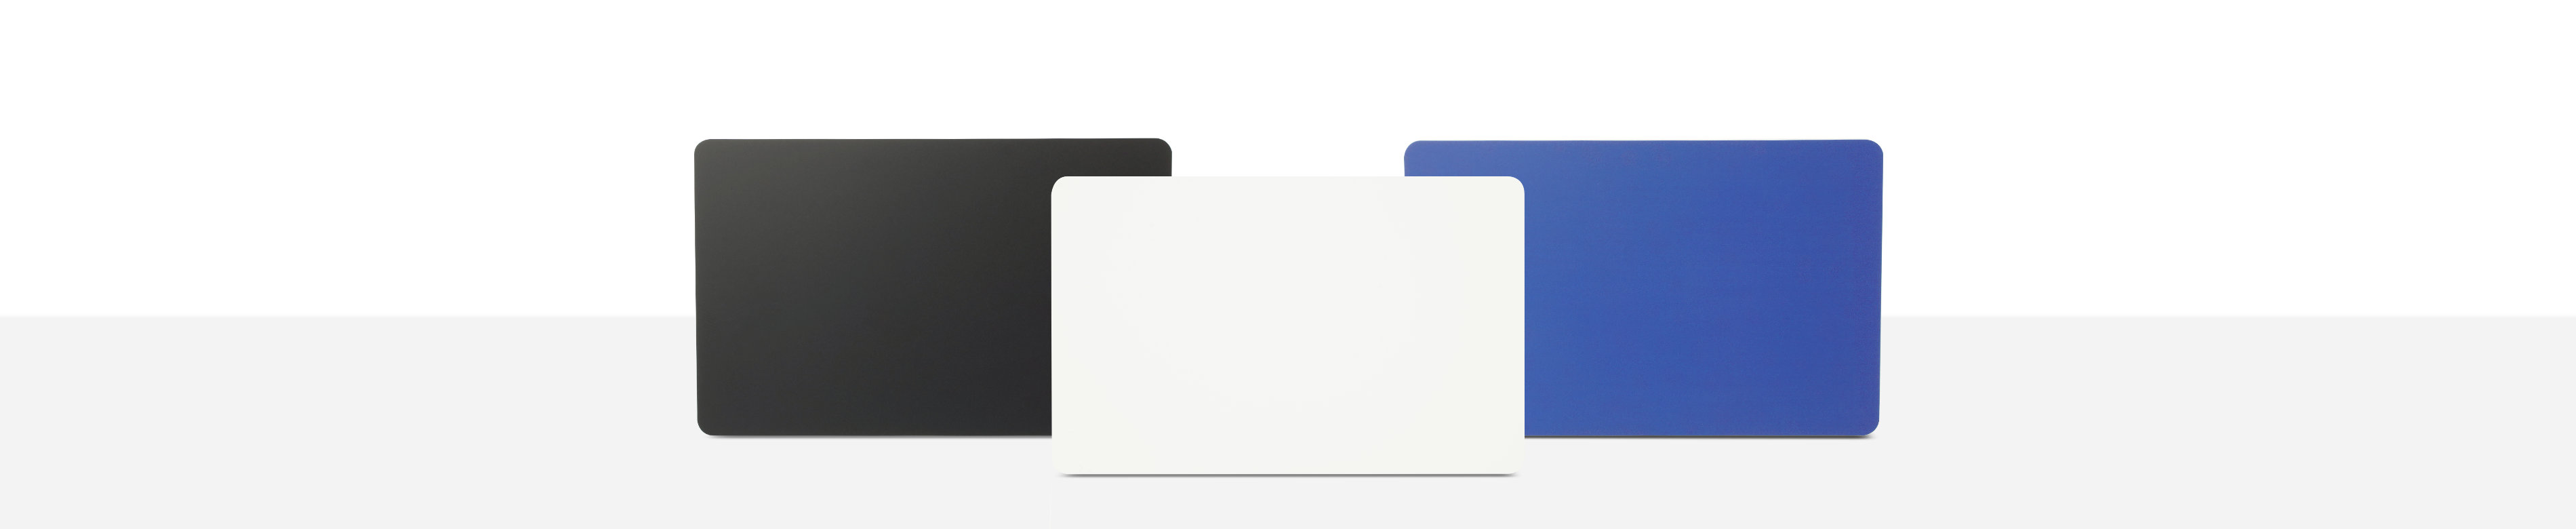 NFC Karten nebeneinander in schwarz, weiß und blau